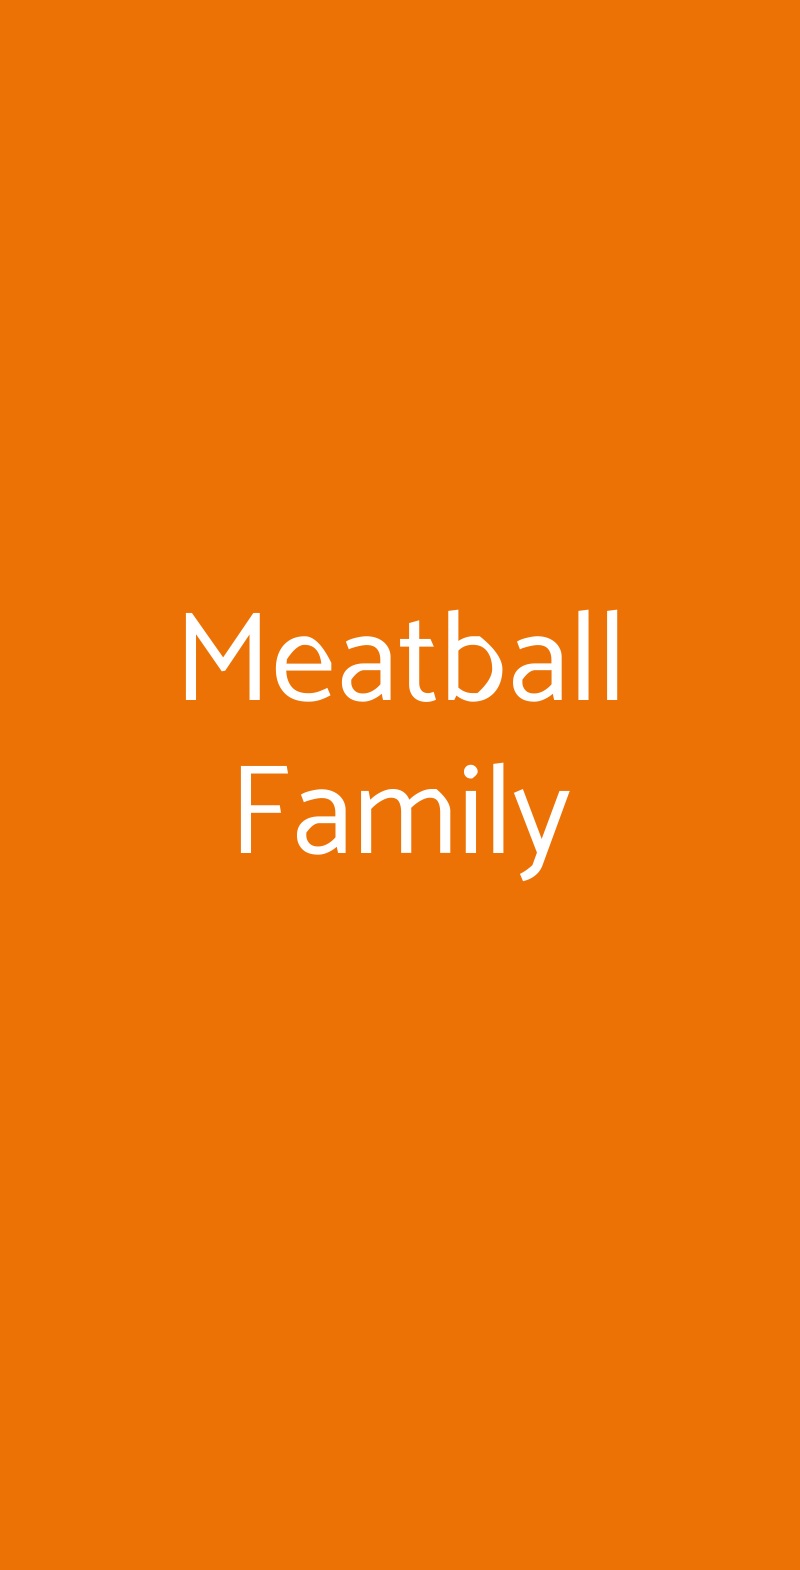 Meatball Family Milano menù 1 pagina